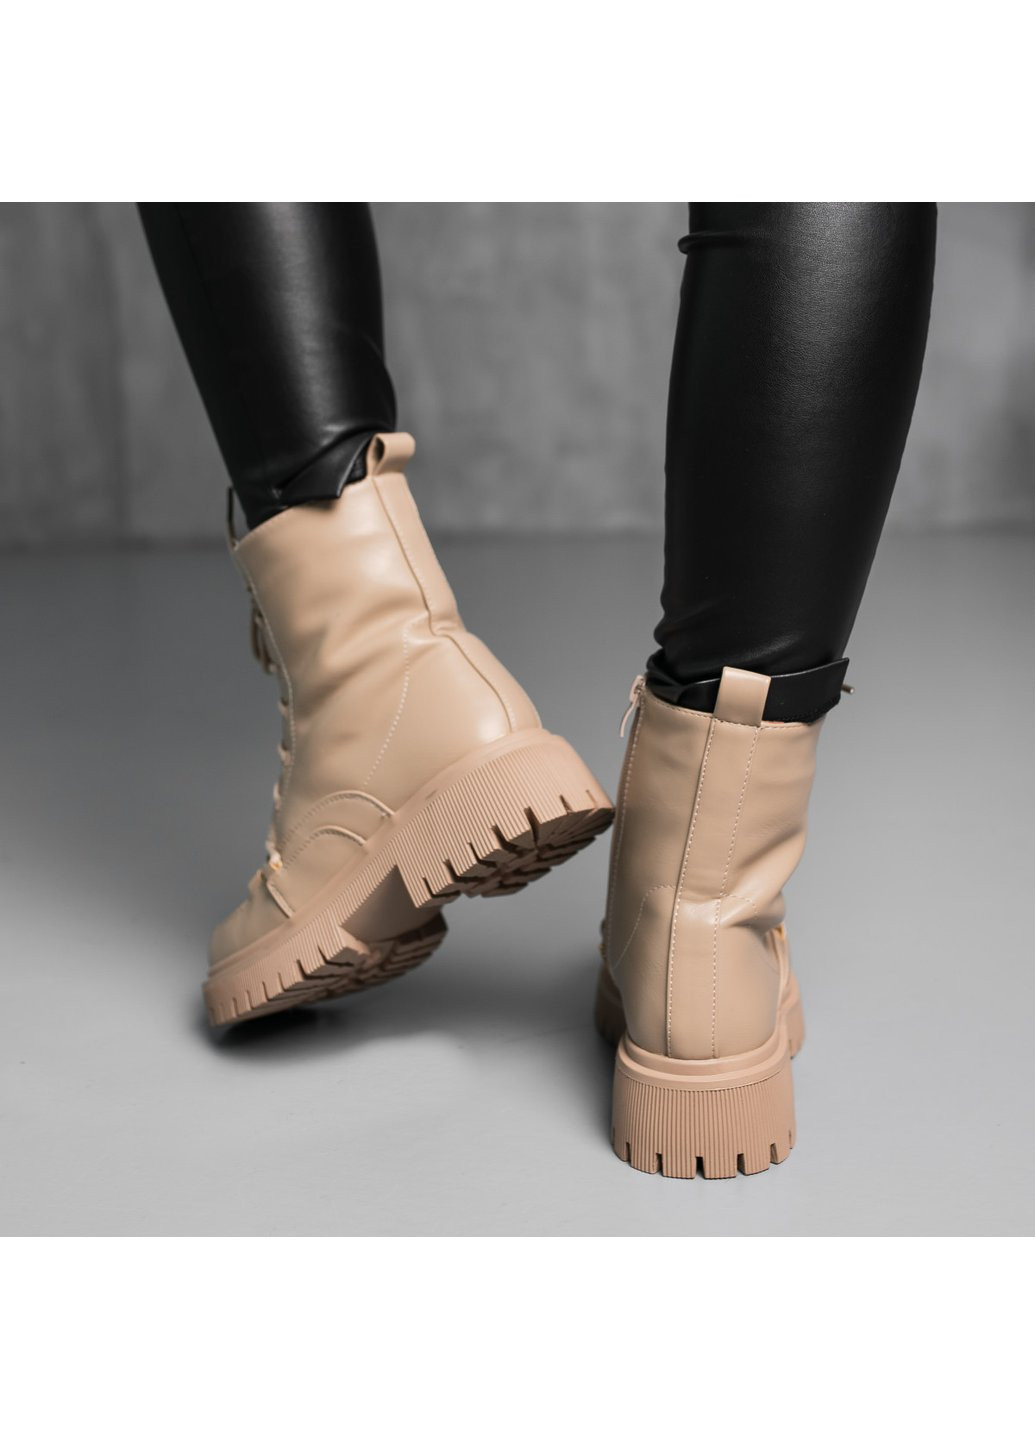 Зимние ботинки женские зимние echo 3879 235 бежевый Fashion из искусственной кожи